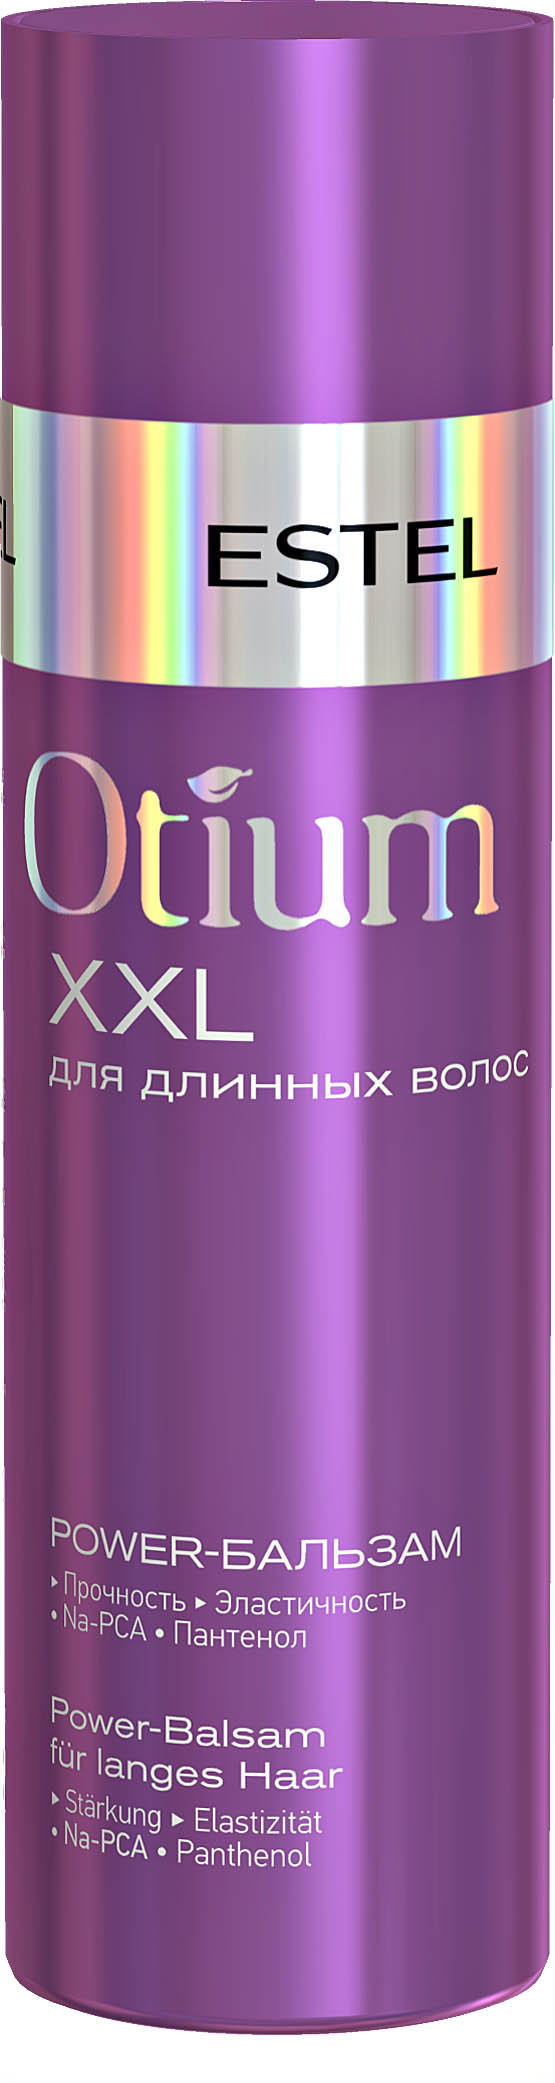 Бальзам-Power для длинных волос OTIUM XXL, 200 мл